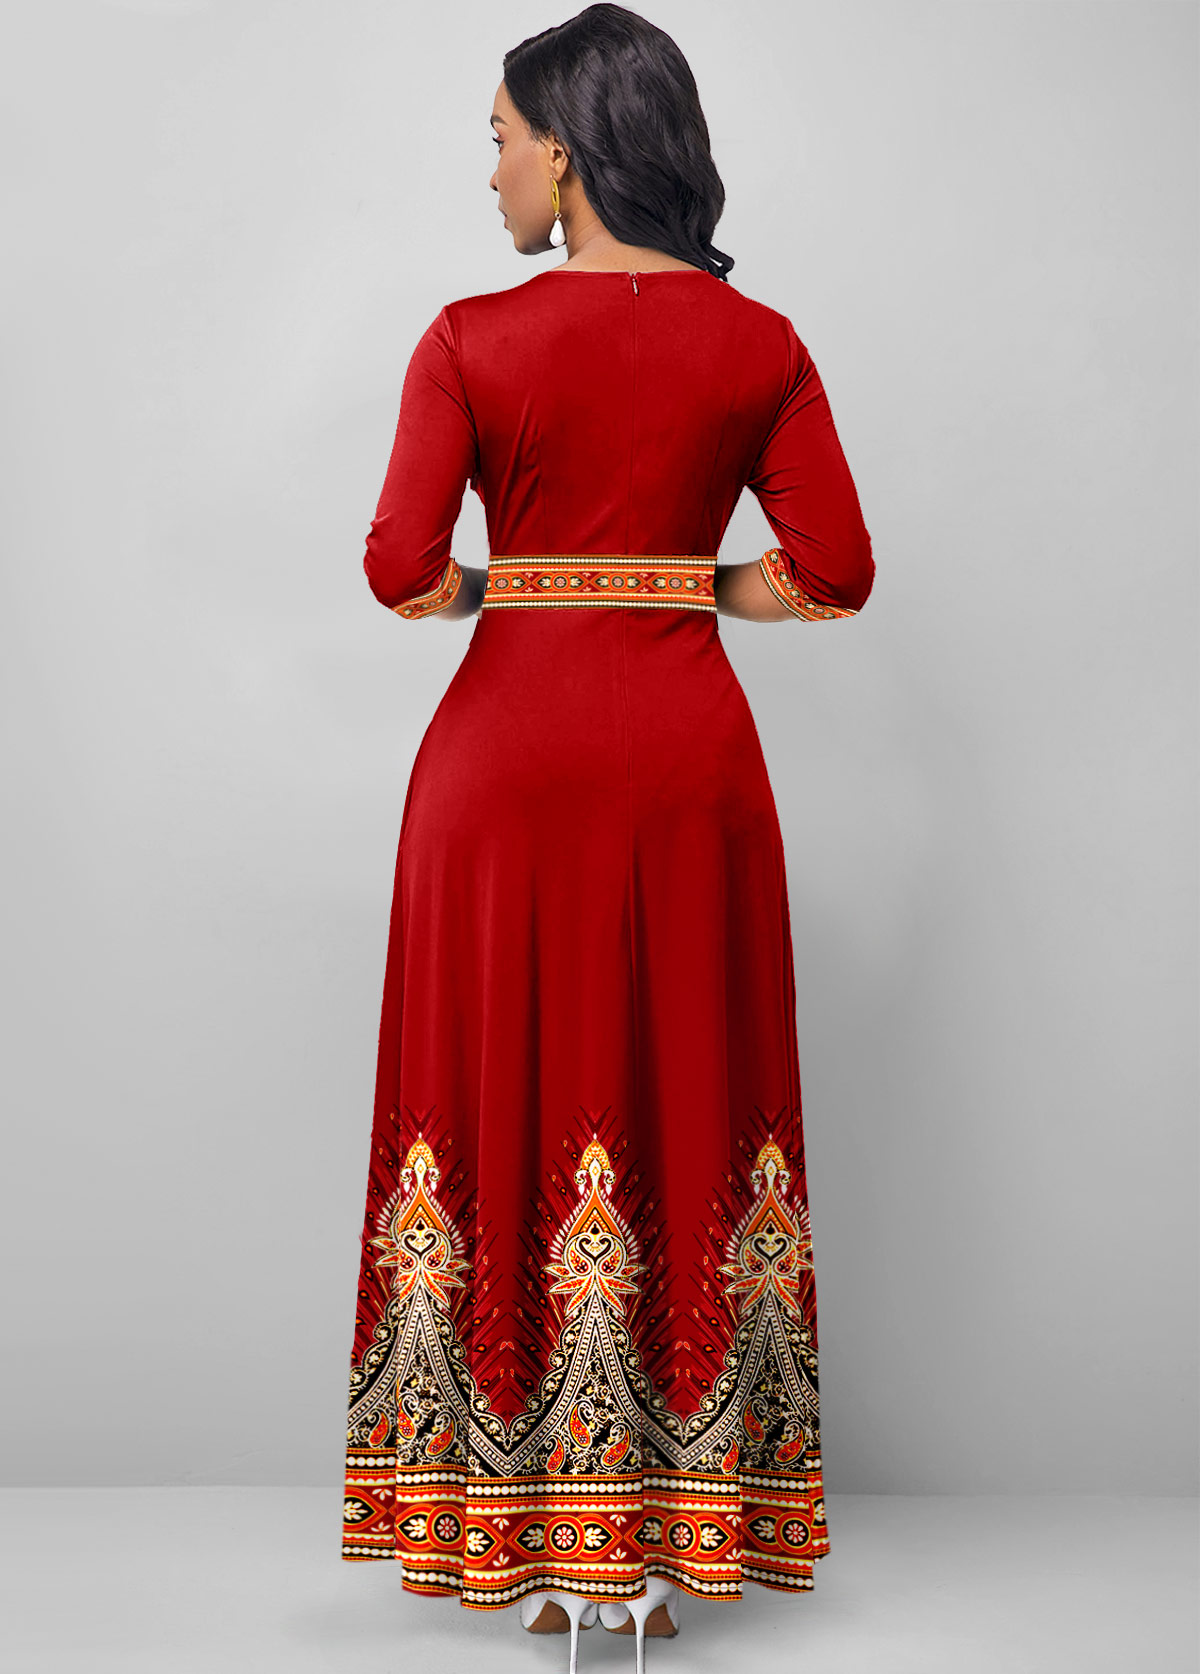 Tribal Print Pocket Deep Red Maxi Dress